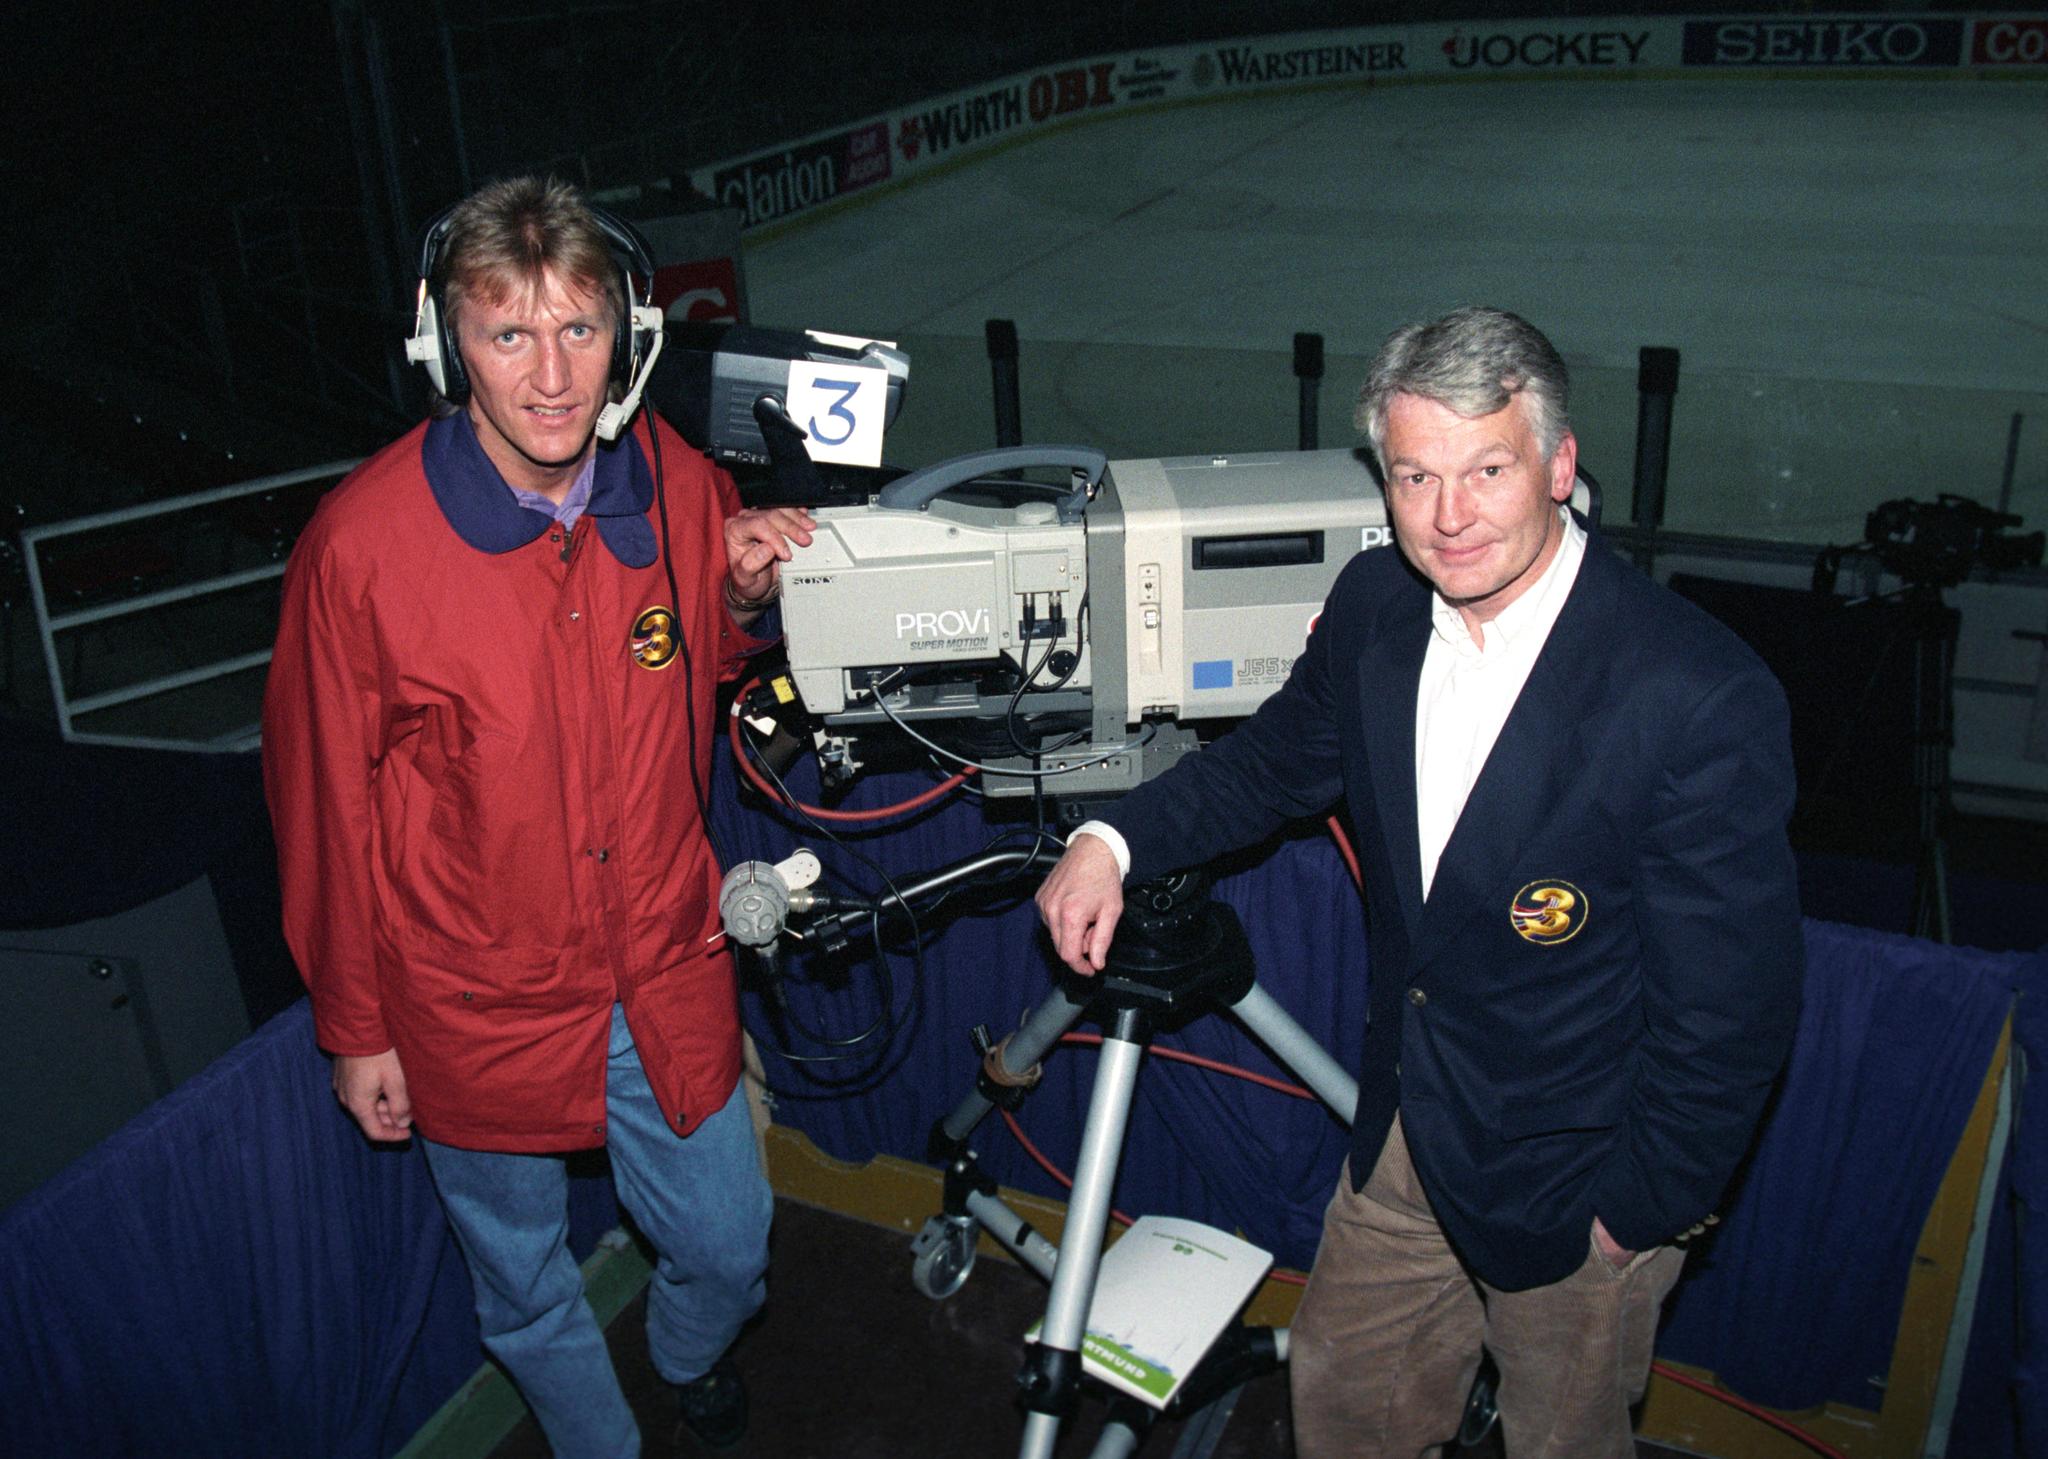 PÅ 90-TALLET: Rolf Kirkvaag jr. har vært involvert i norsk ishockey som spiller, trener og leder så å si hele sitt liv. Her som kommentator sammen med tidligere landslagsspiller Åge Ellingsen under VM i 1993.